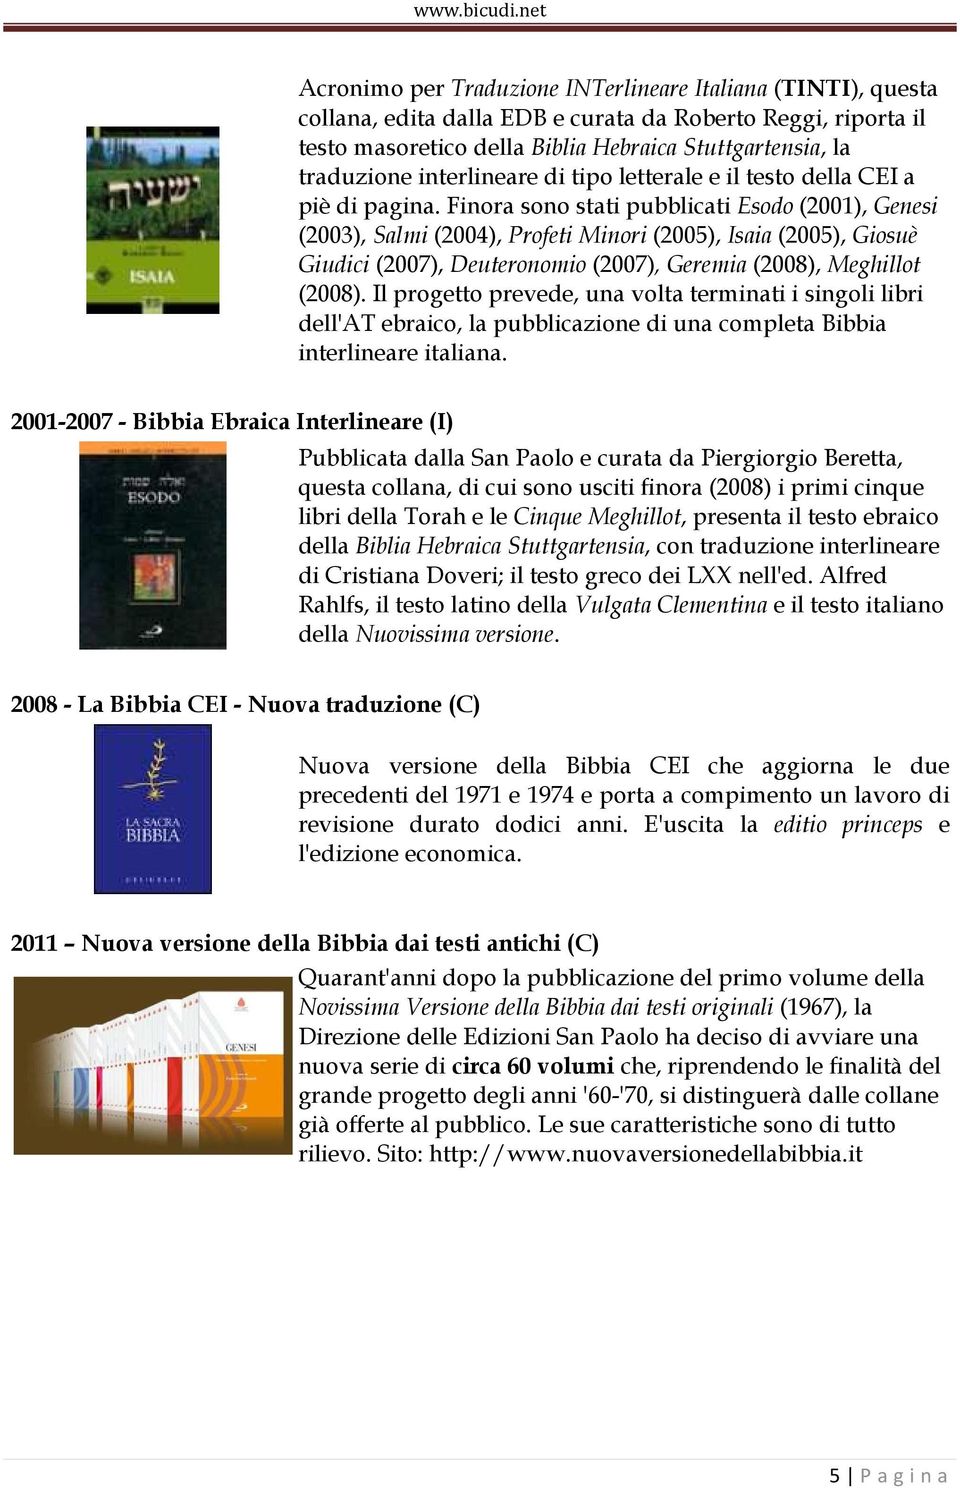 Finora sono stati pubblicati Esodo (2001), Genesi (2003), Salmi (2004), Profeti Minori (2005), Isaia (2005), Giosuè Giudici (2007), Deuteronomio (2007), Geremia (2008), Meghillot (2008).